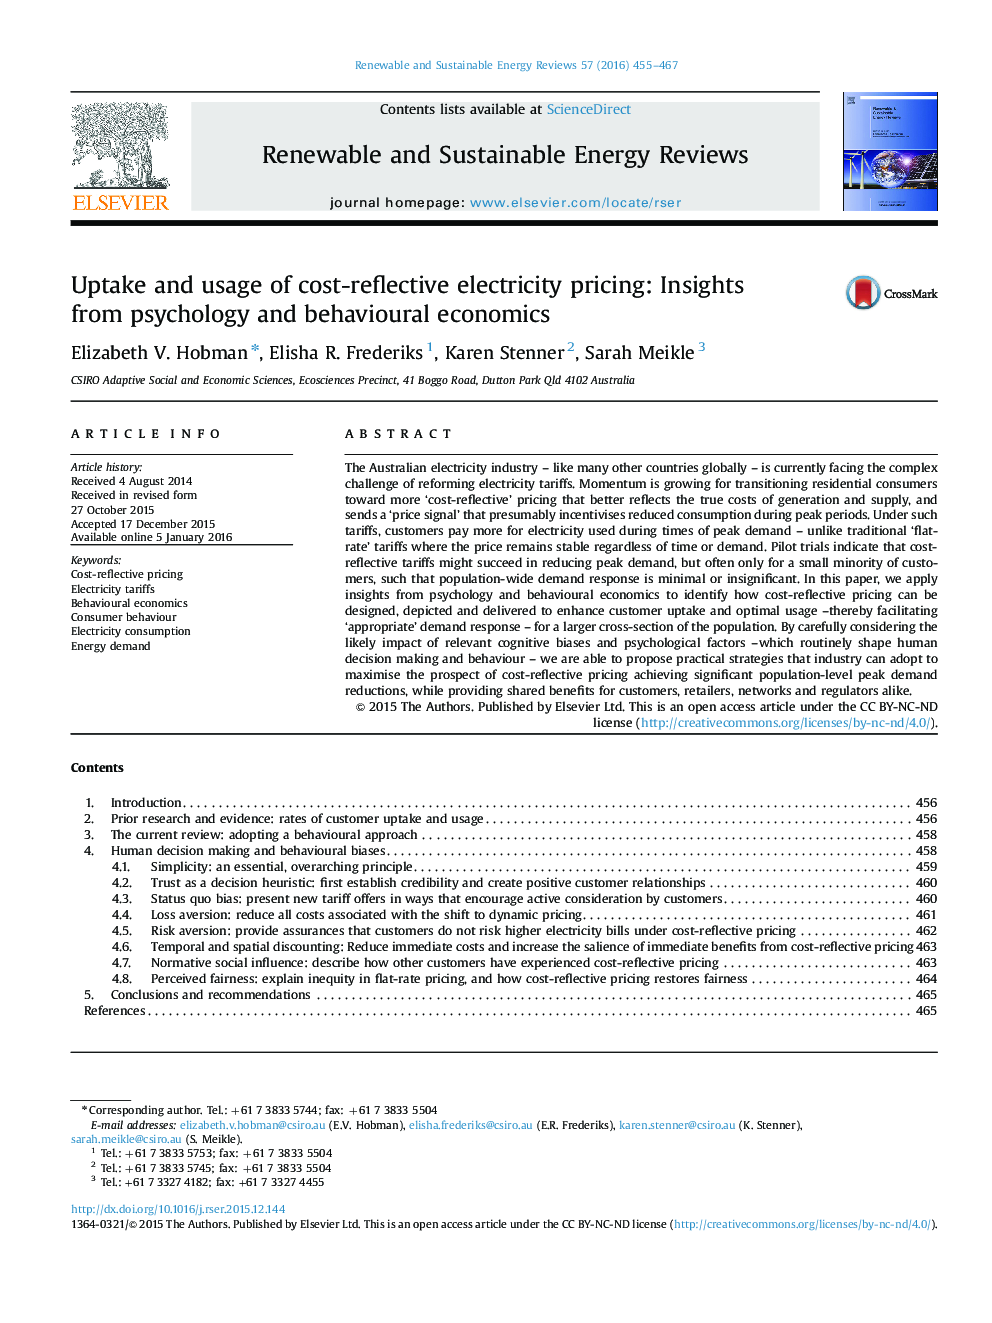 پذیرش و استفاده از قیمت برق بازتابنده قیمت: بینش از روانشناسی و اقتصاد رفتاری 